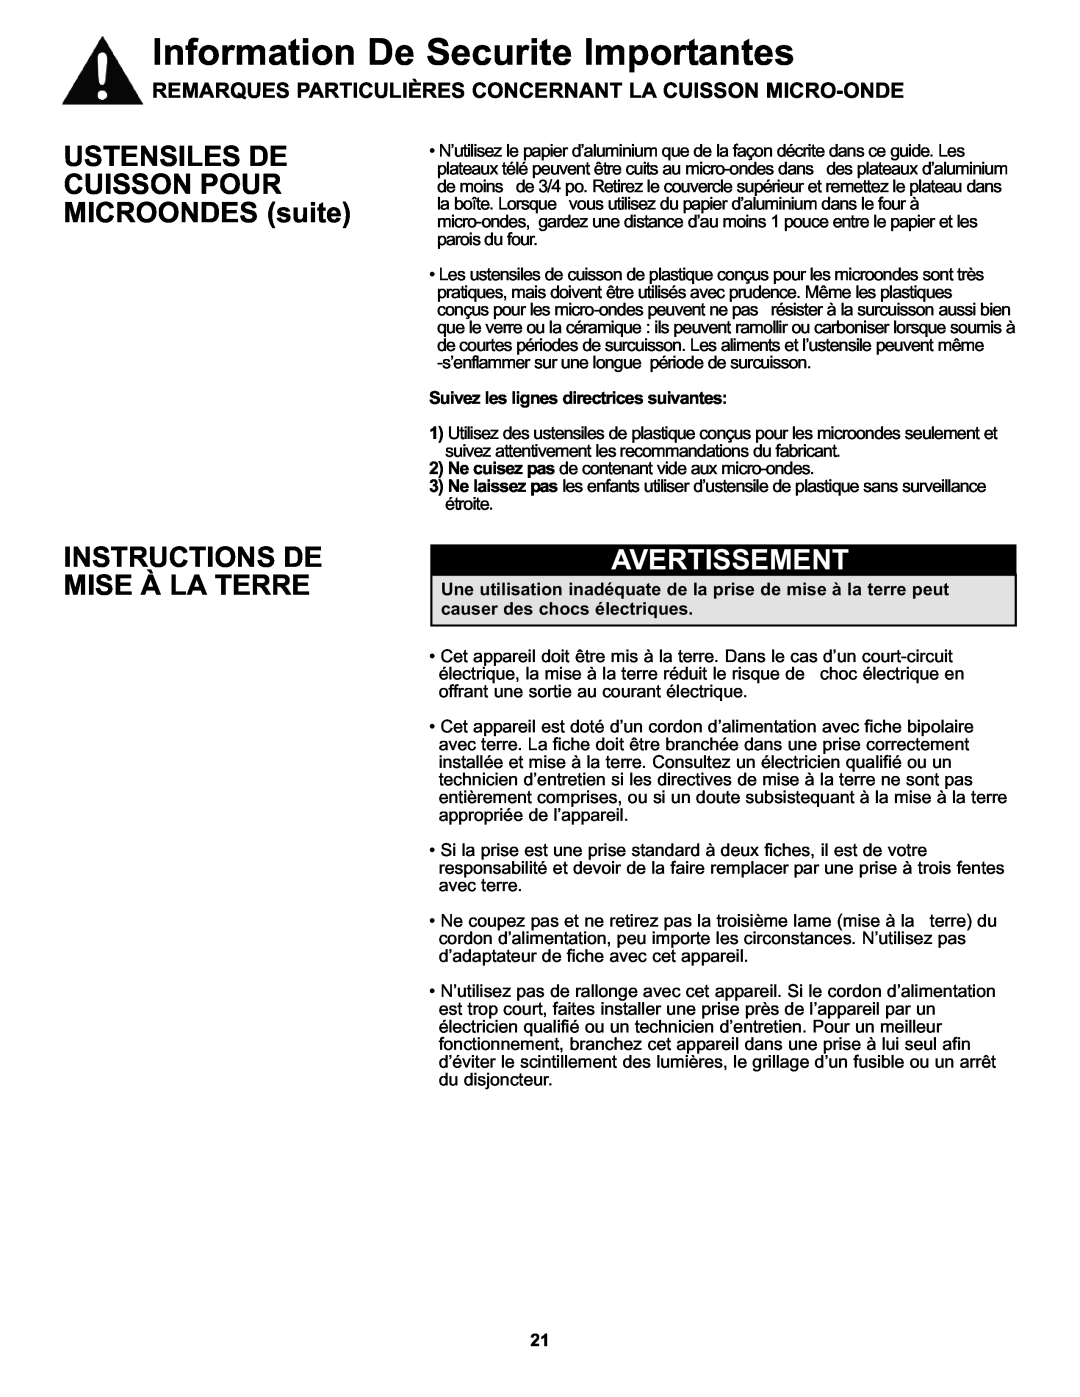 Danby DMW111KWDB manual USTENSILES DE CUISSON POUR MICROONDES suite, Instructions De Mise À La Terre, Avertissement 